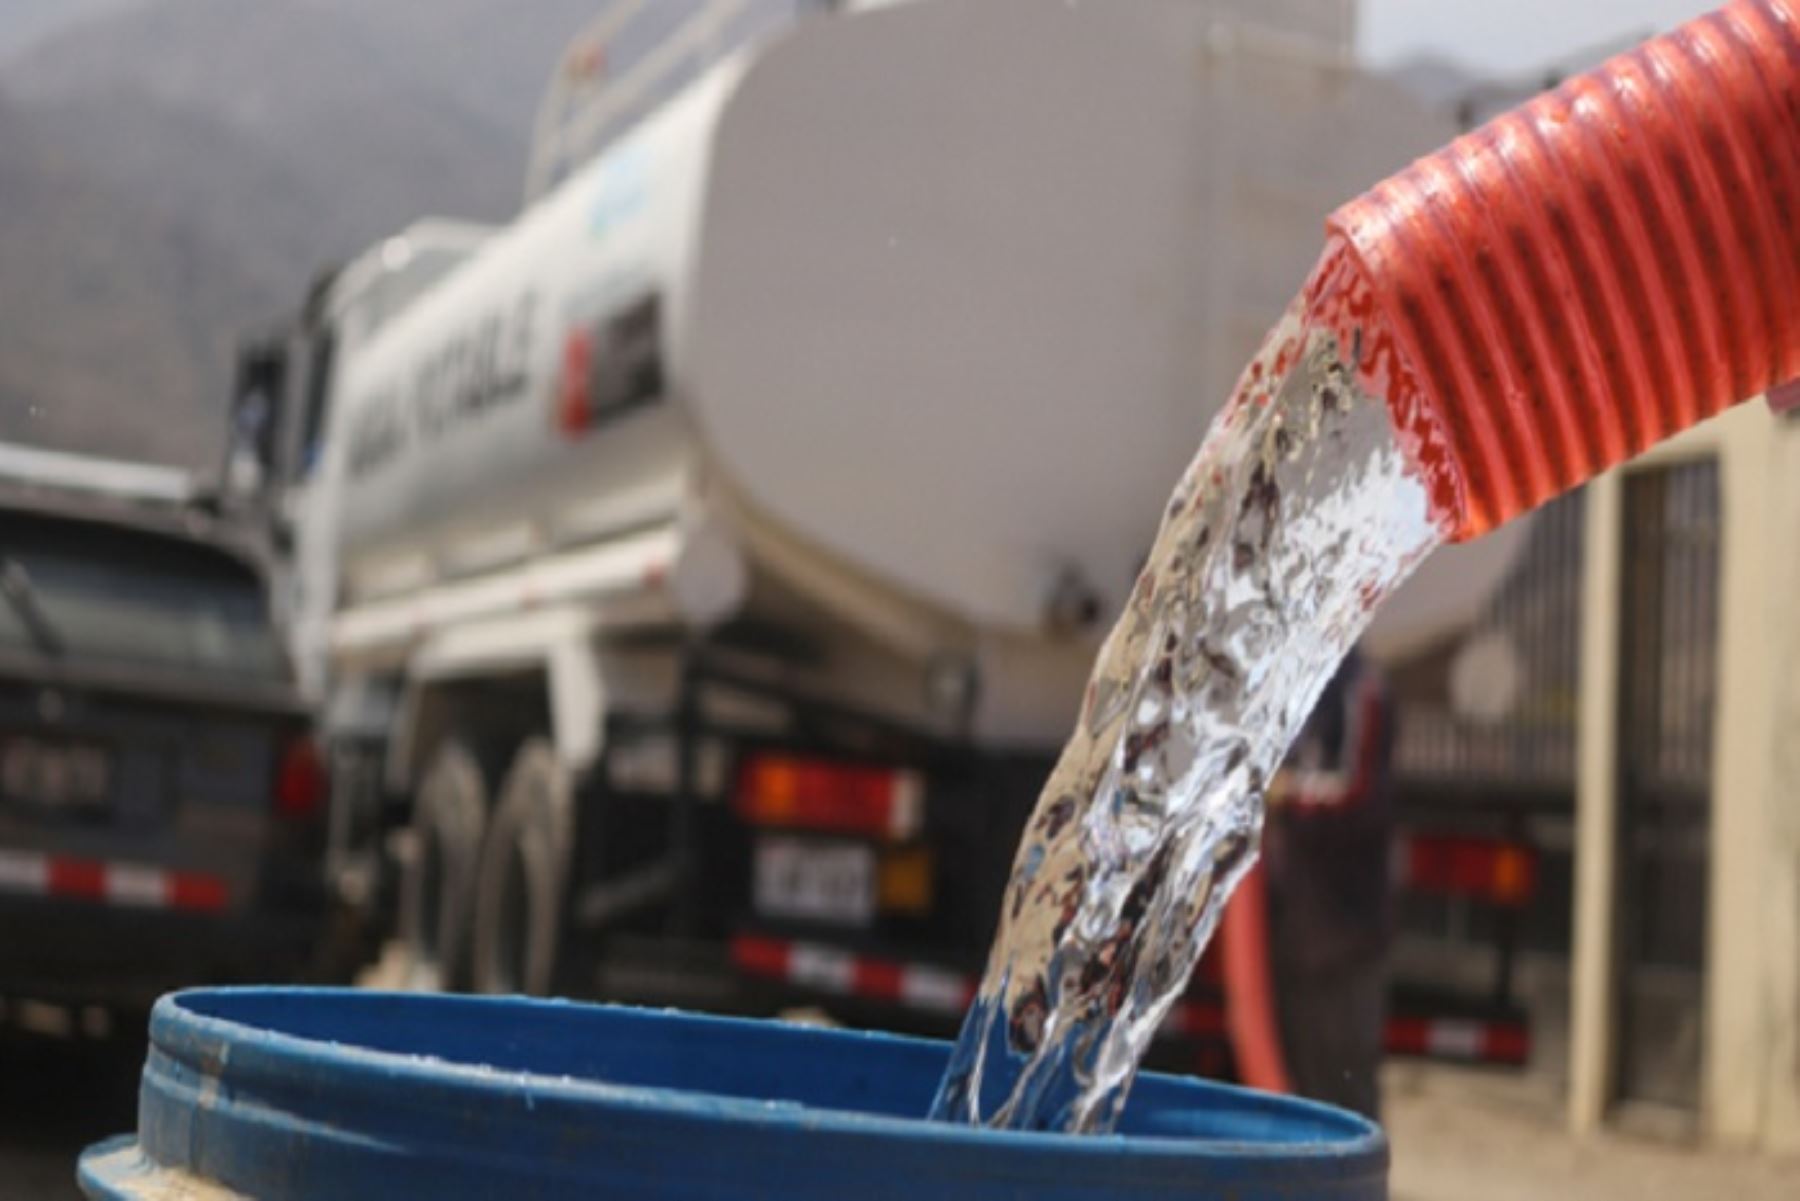 Sedapal continuará abasteciendo de agua potable a la población a través de camiones cisterna durante la restricción temporal del servicio, añade en su comunicado difundido hoy. Foto: ANDINA/Difusión